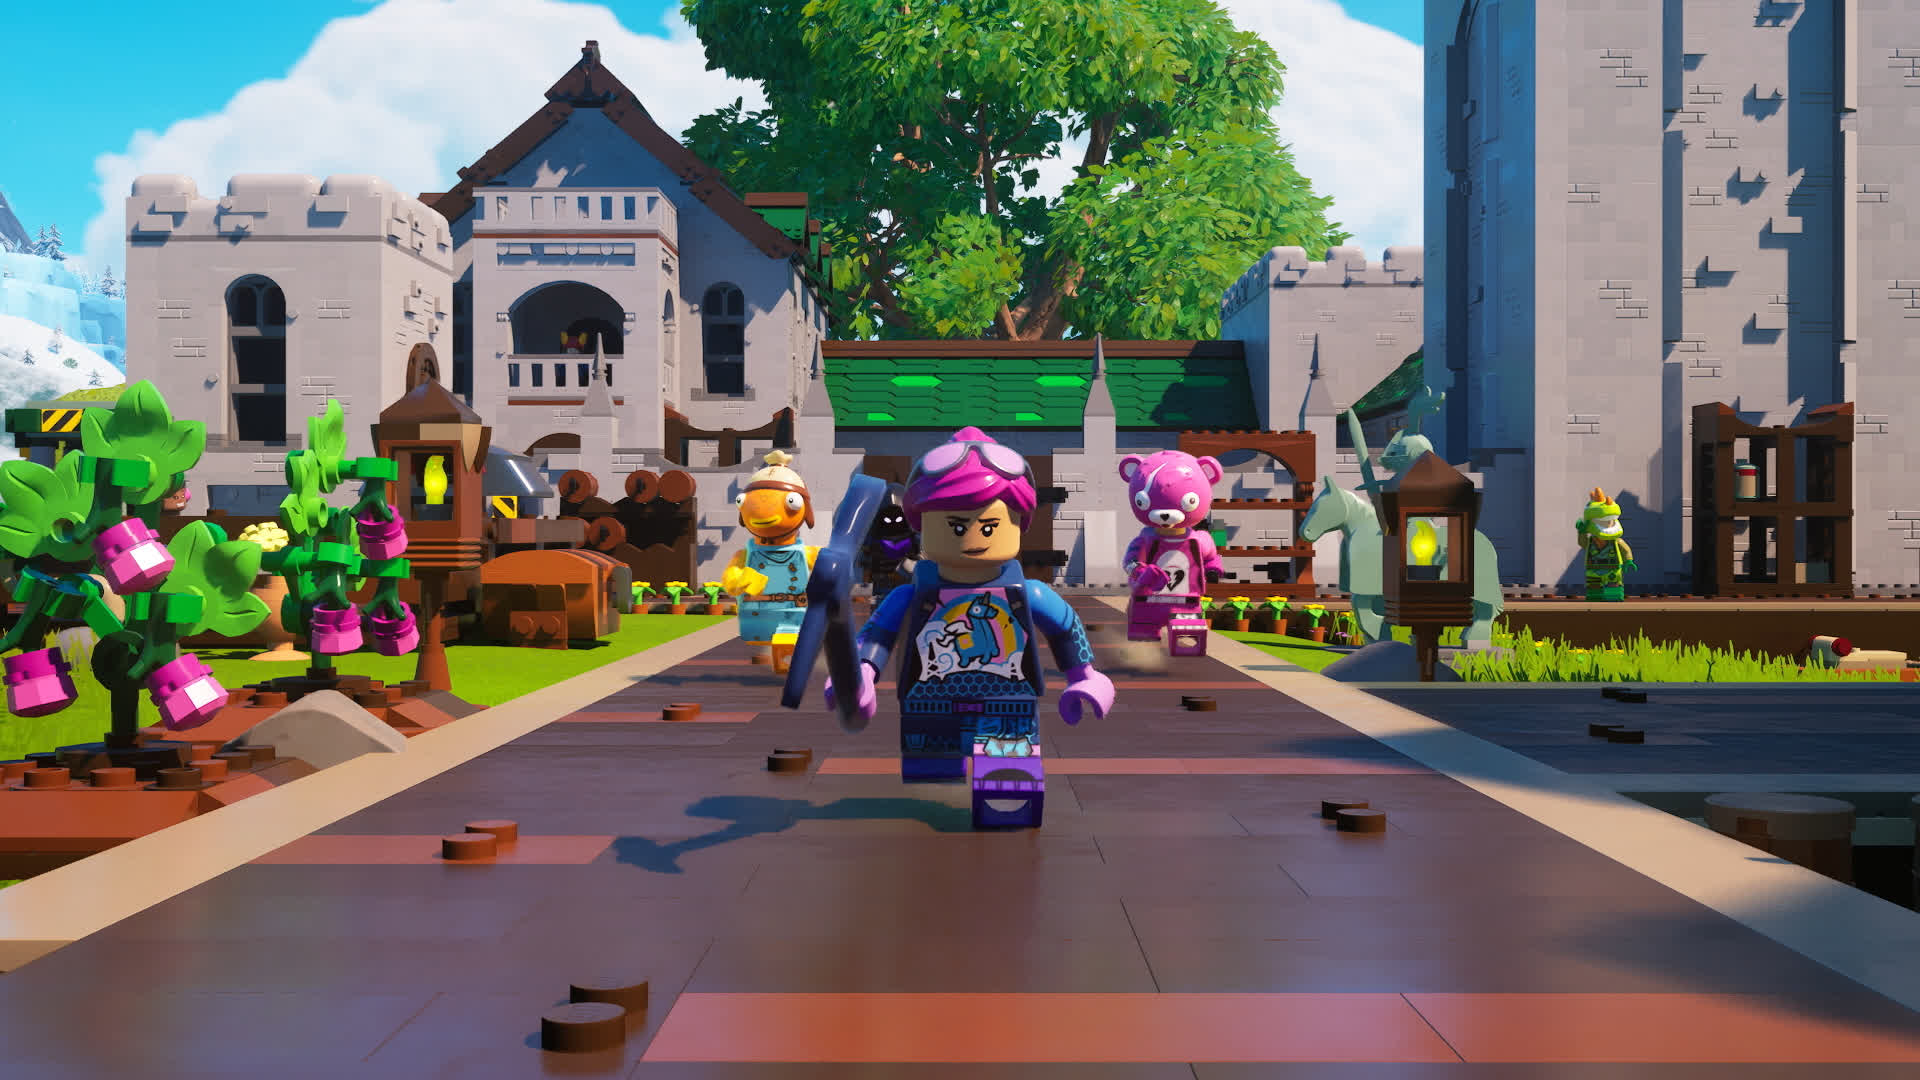 Com Lego Fortnite, Epic Games quer ir além do battle royale